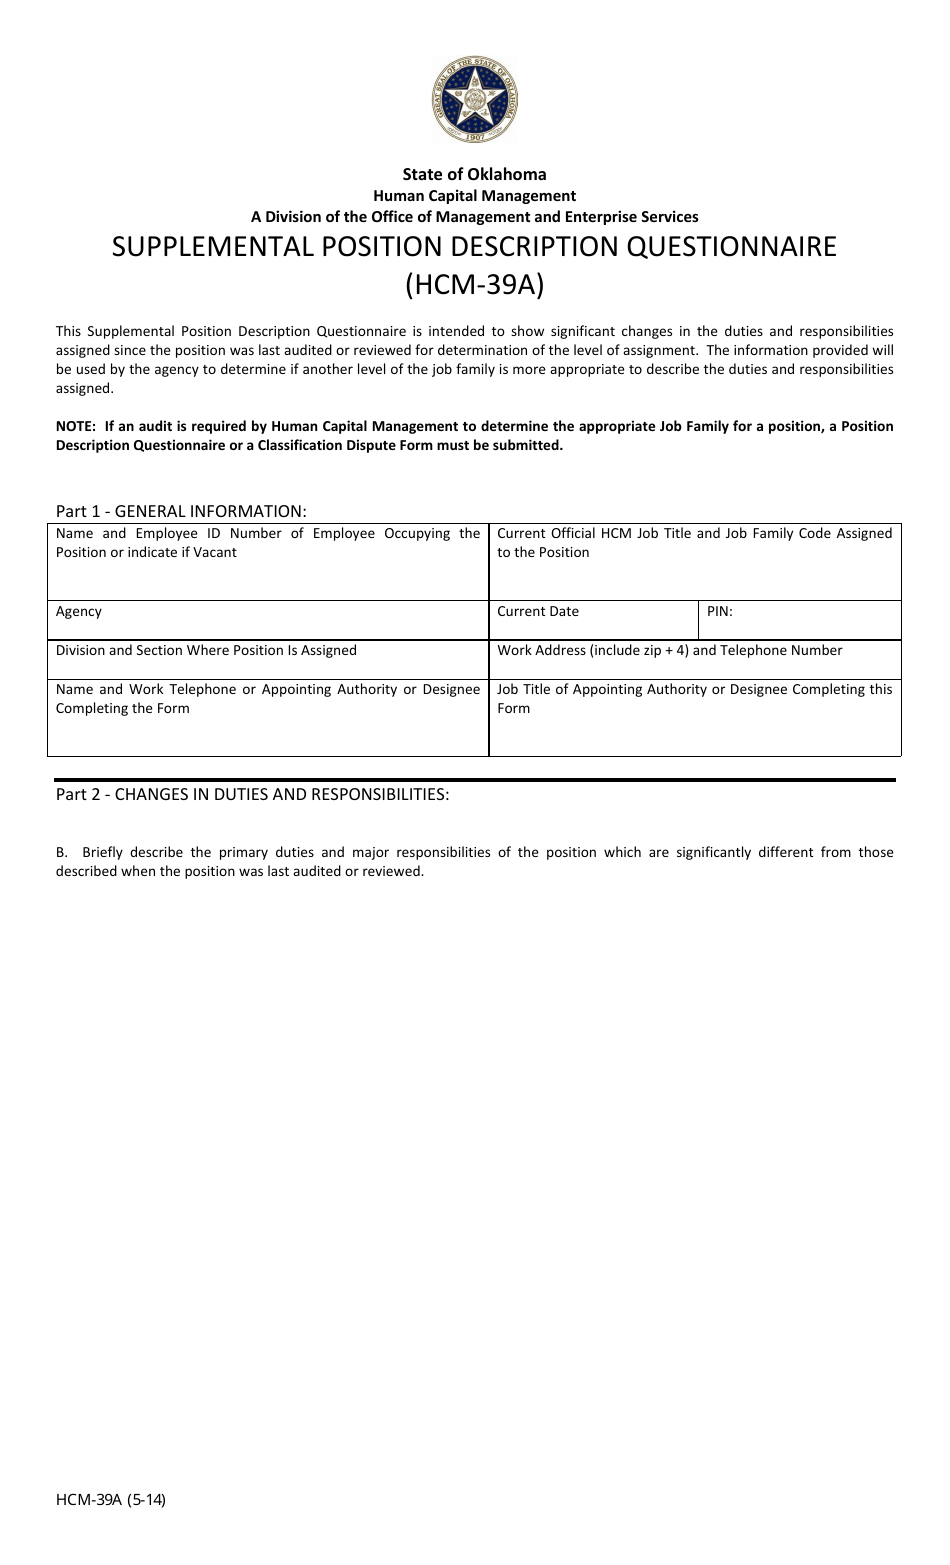 Form HCM-39A Supplemental Position Description Questionnaire - Oklahoma, Page 1